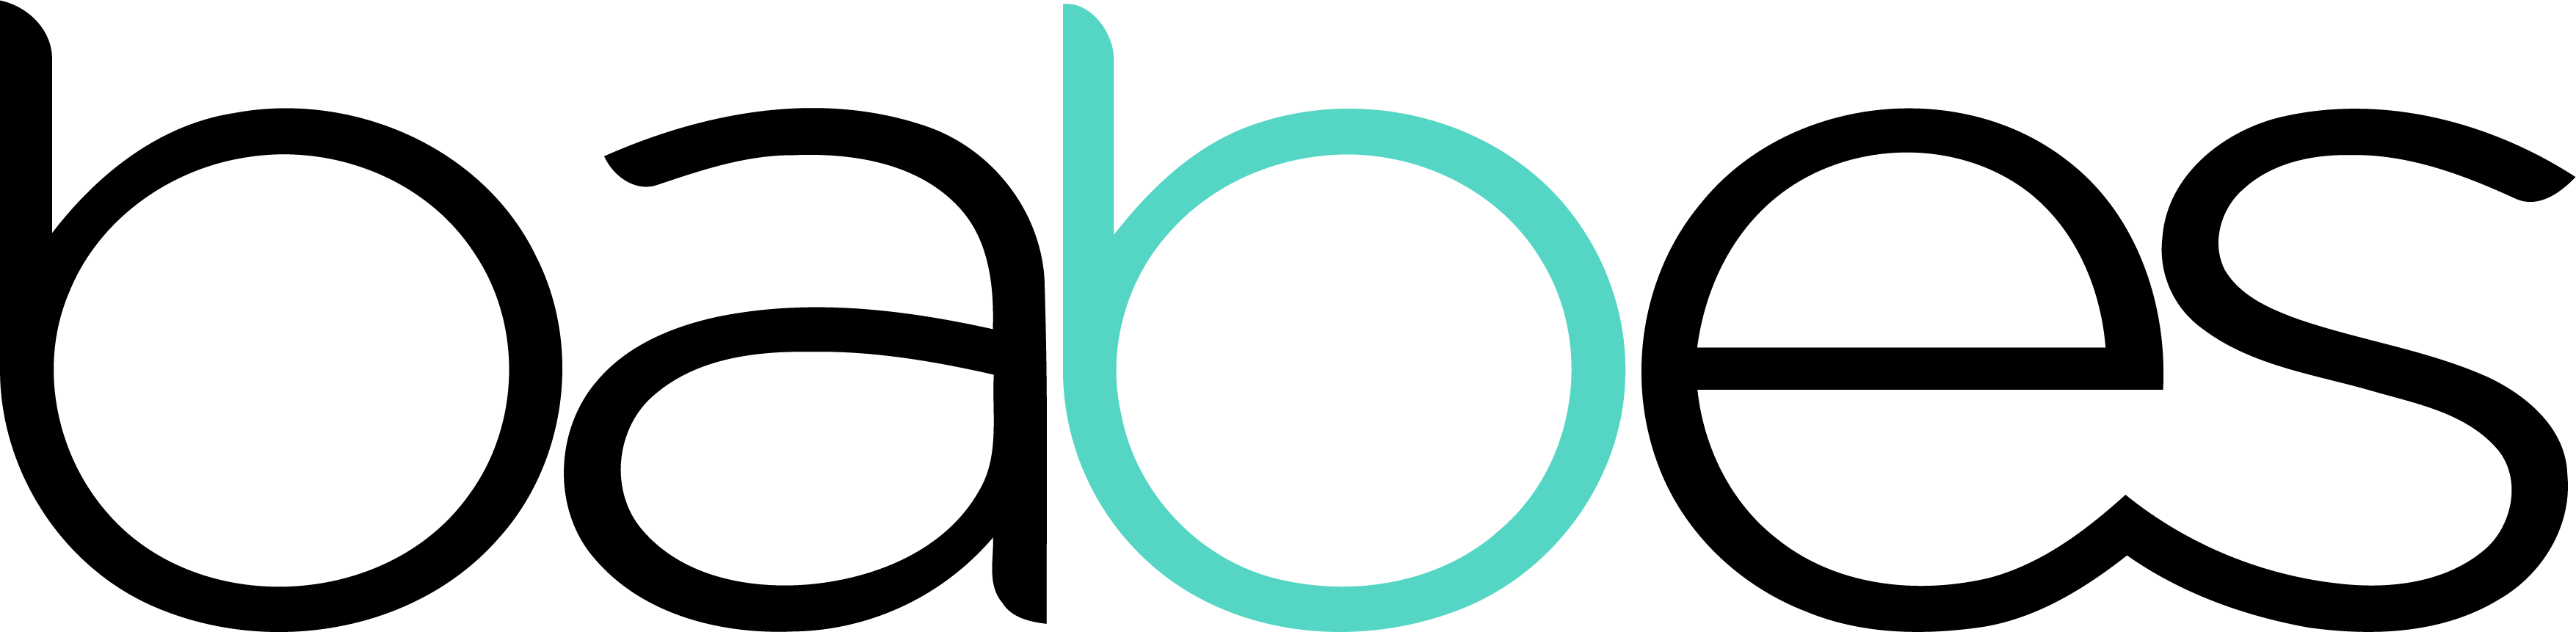 logo du réseau de babes